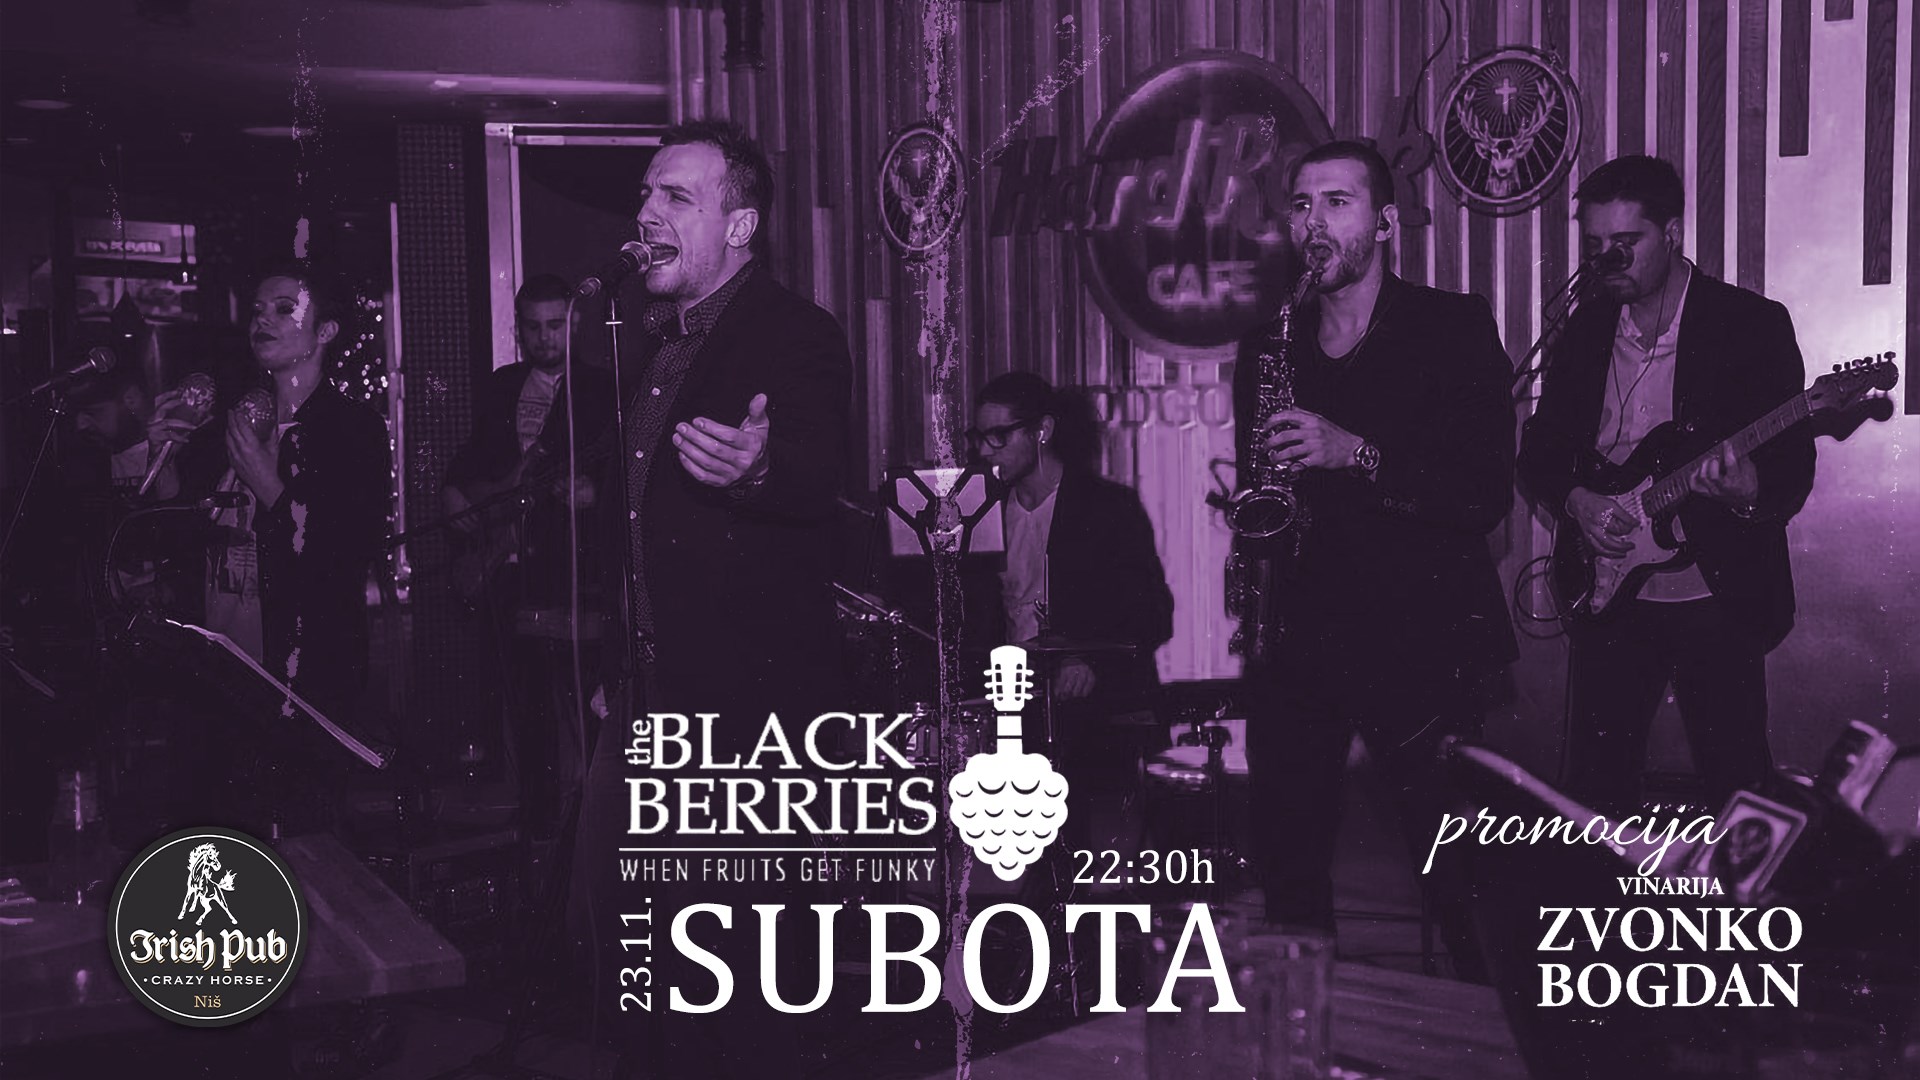 Blackberries bend i promocija Vinarije Zvonko Bogdan